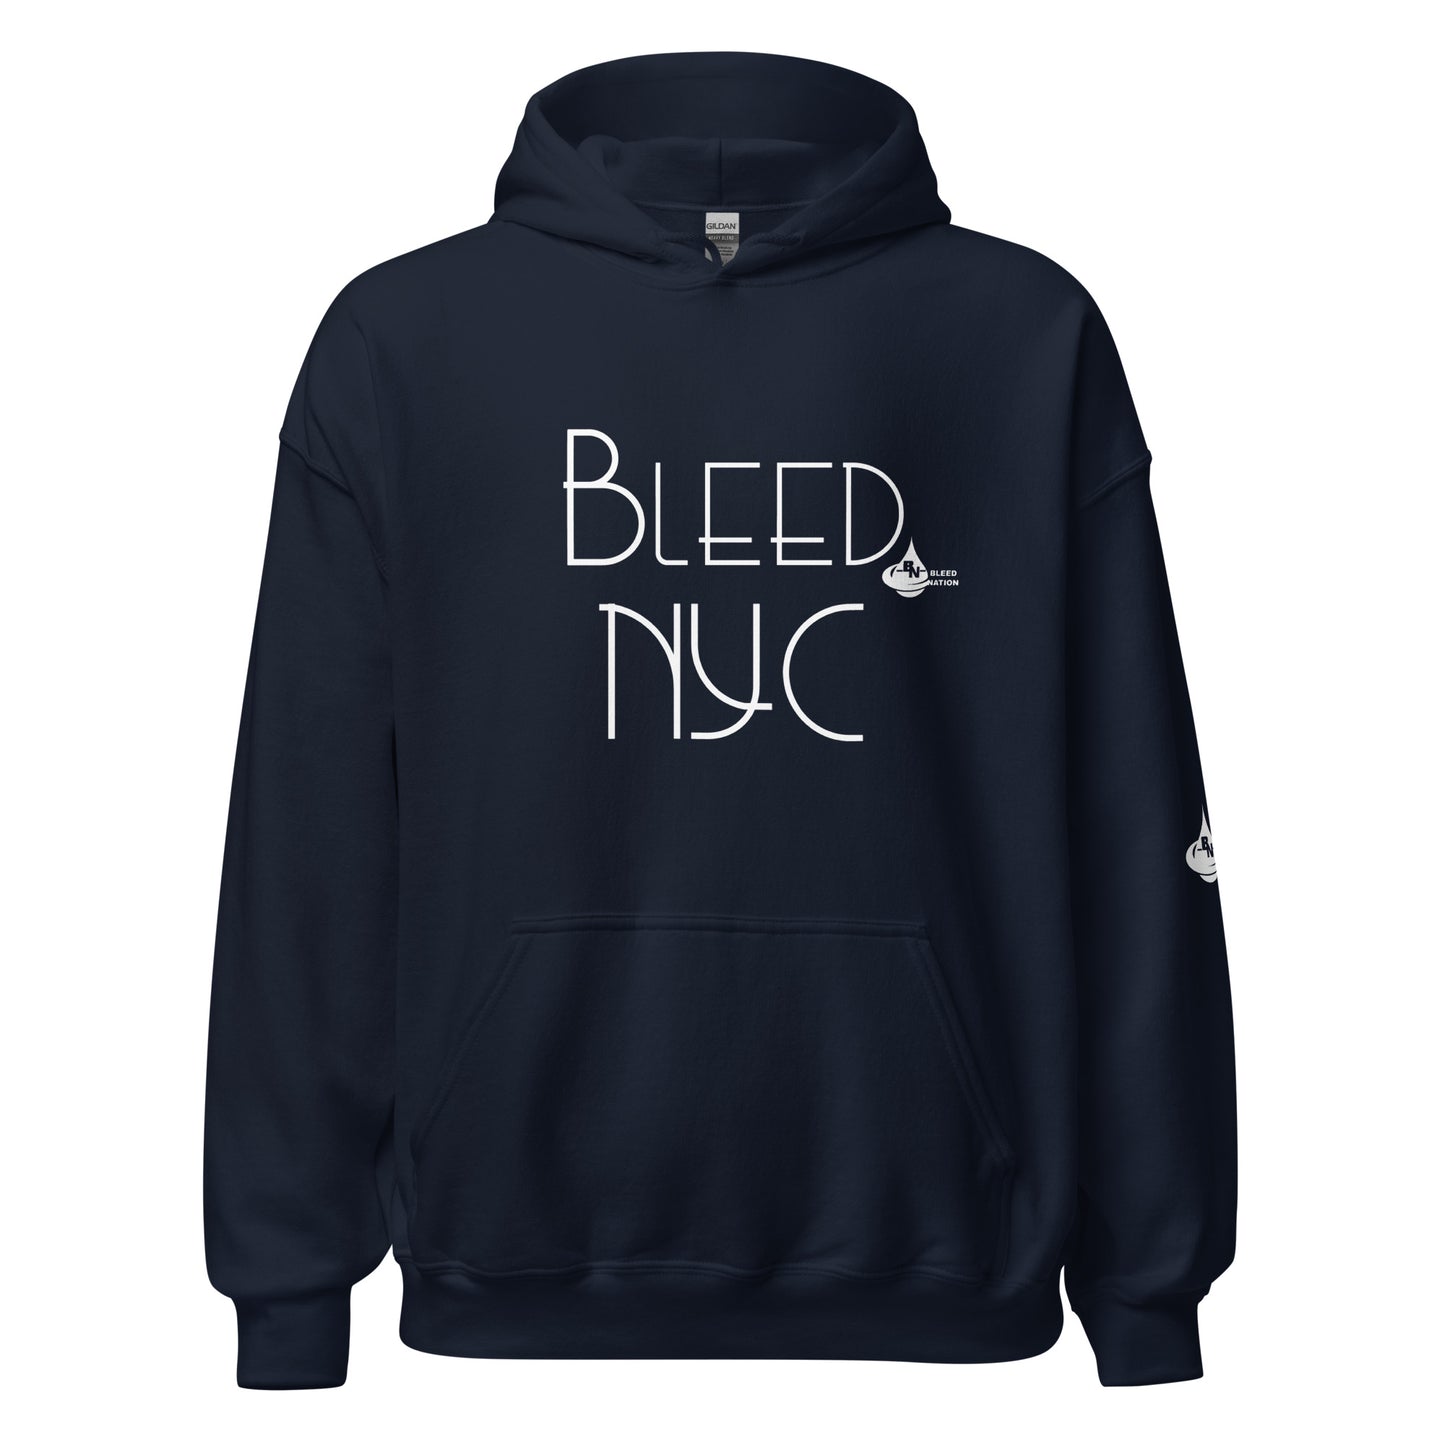 Bleed NYC Unisex Hoodie